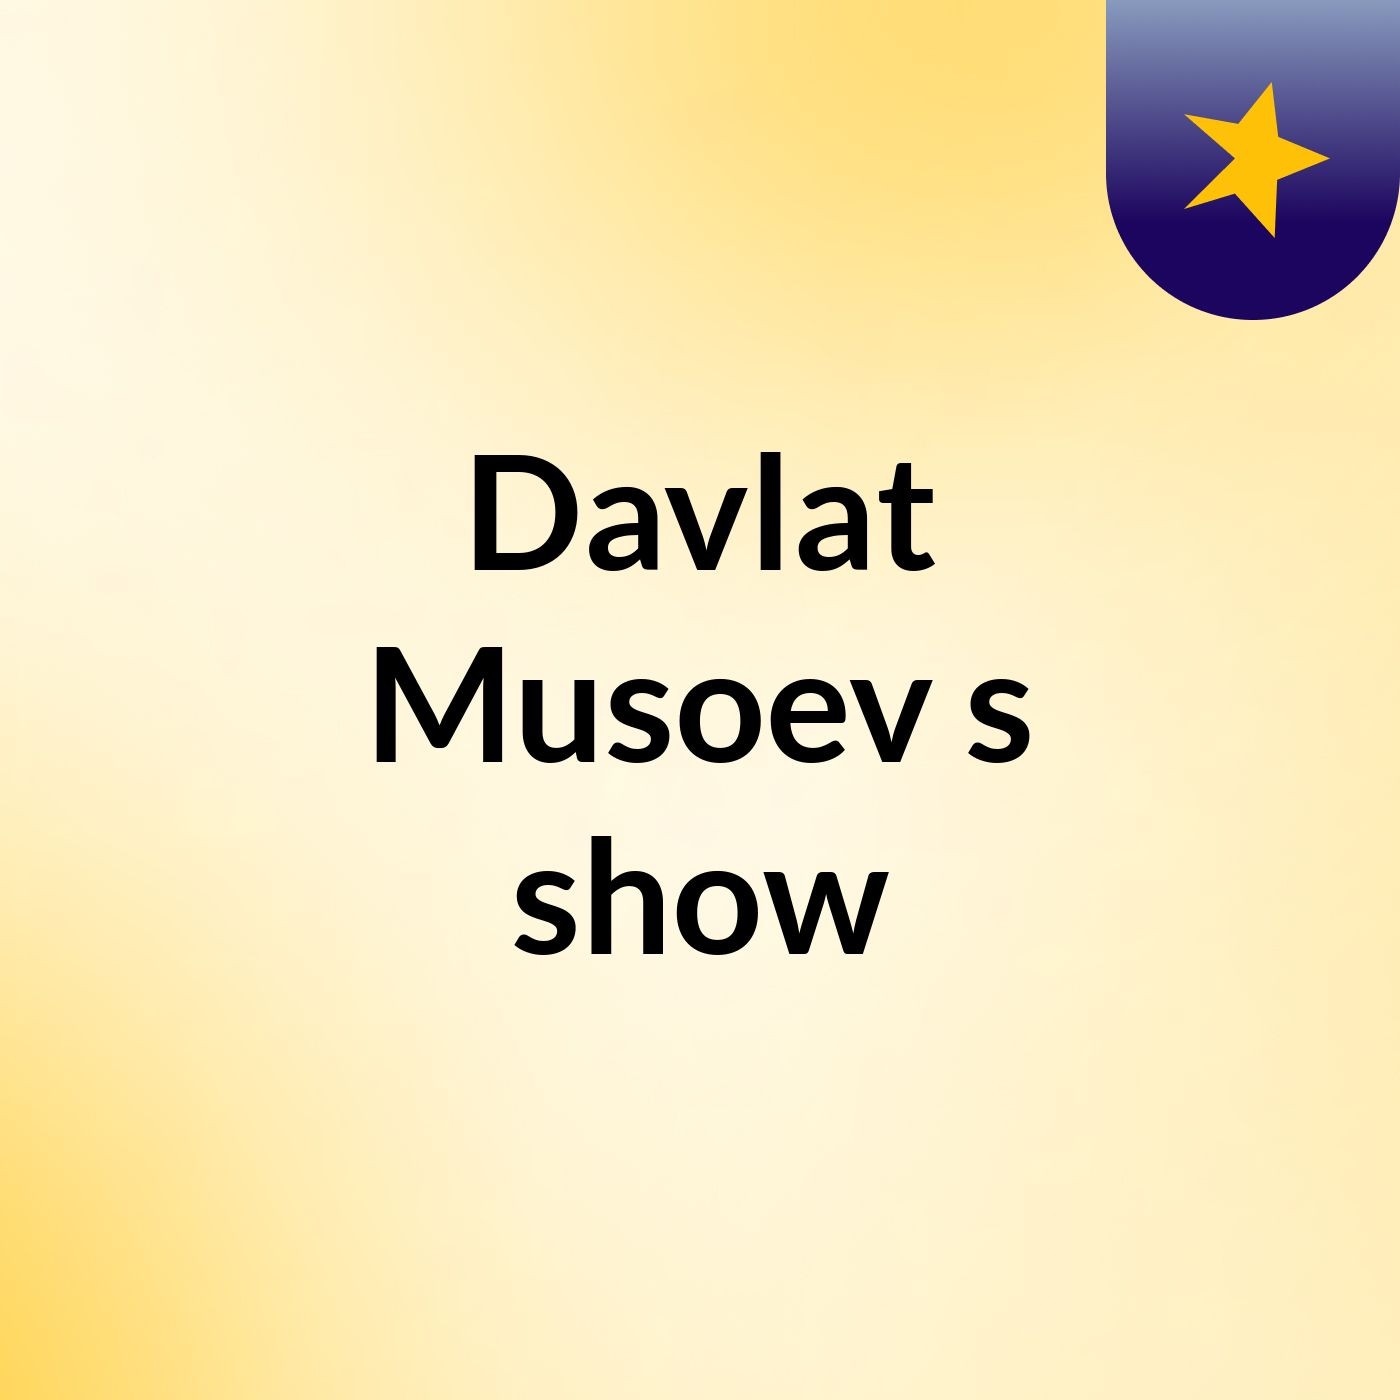 Davlat Musoev's show